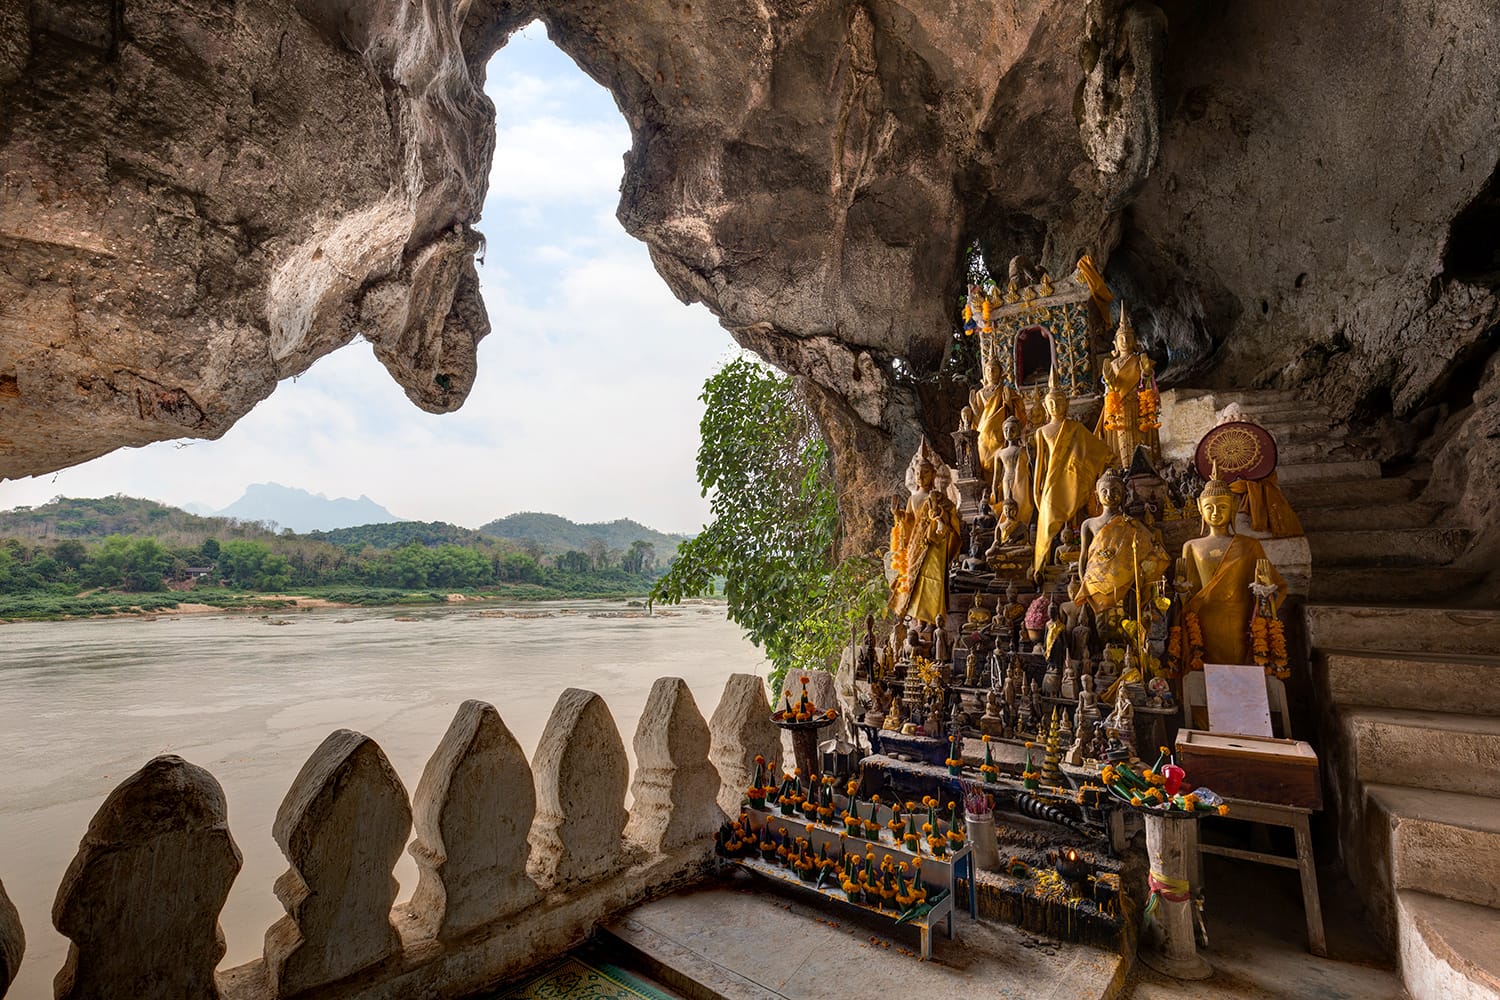 Θέα στον ποταμό Μεκόνγκ και πολλά χρυσά και ξύλινα αγάλματα του Βούδα και θρησκευτικές προσφορές μέσα στο Σπήλαιο Ταμ Τινγκ στα περίφημα Σπήλαια Pak Ou κοντά στο Λουάνγκ Πραμπάνγκ στο Λάος.